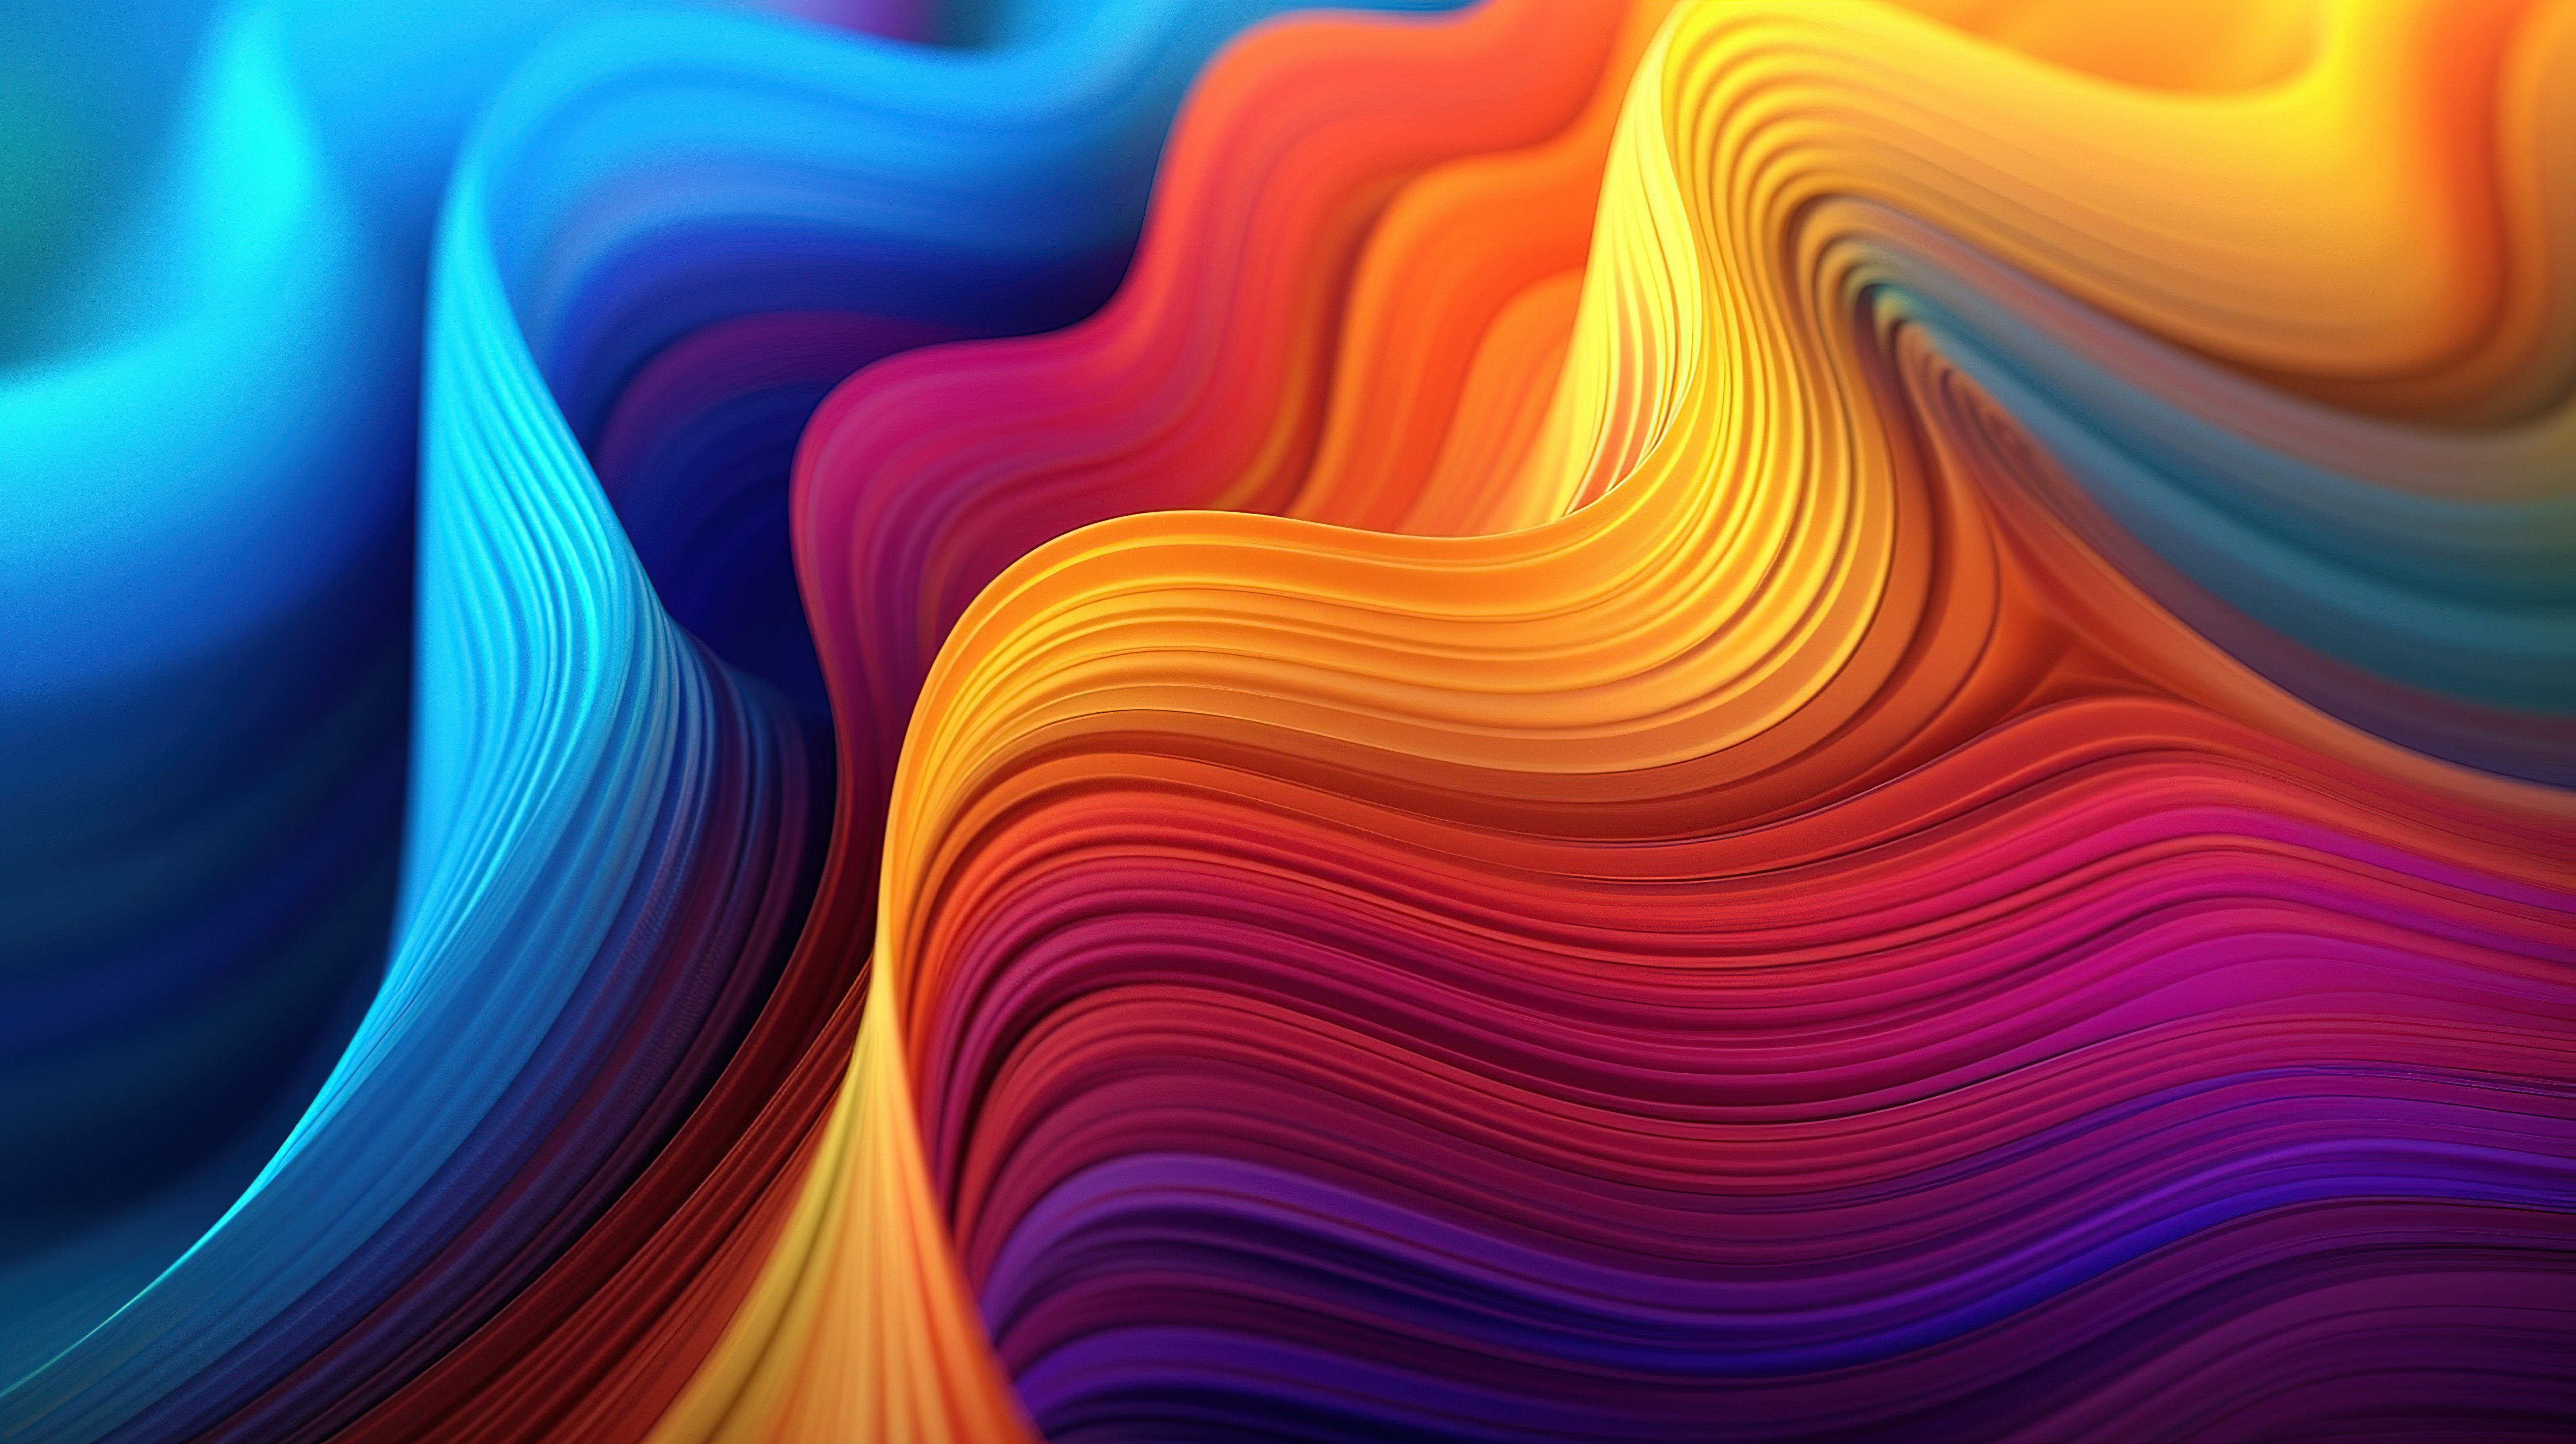 插图 3D 波浪背景充满色彩缤纷的抽象图片